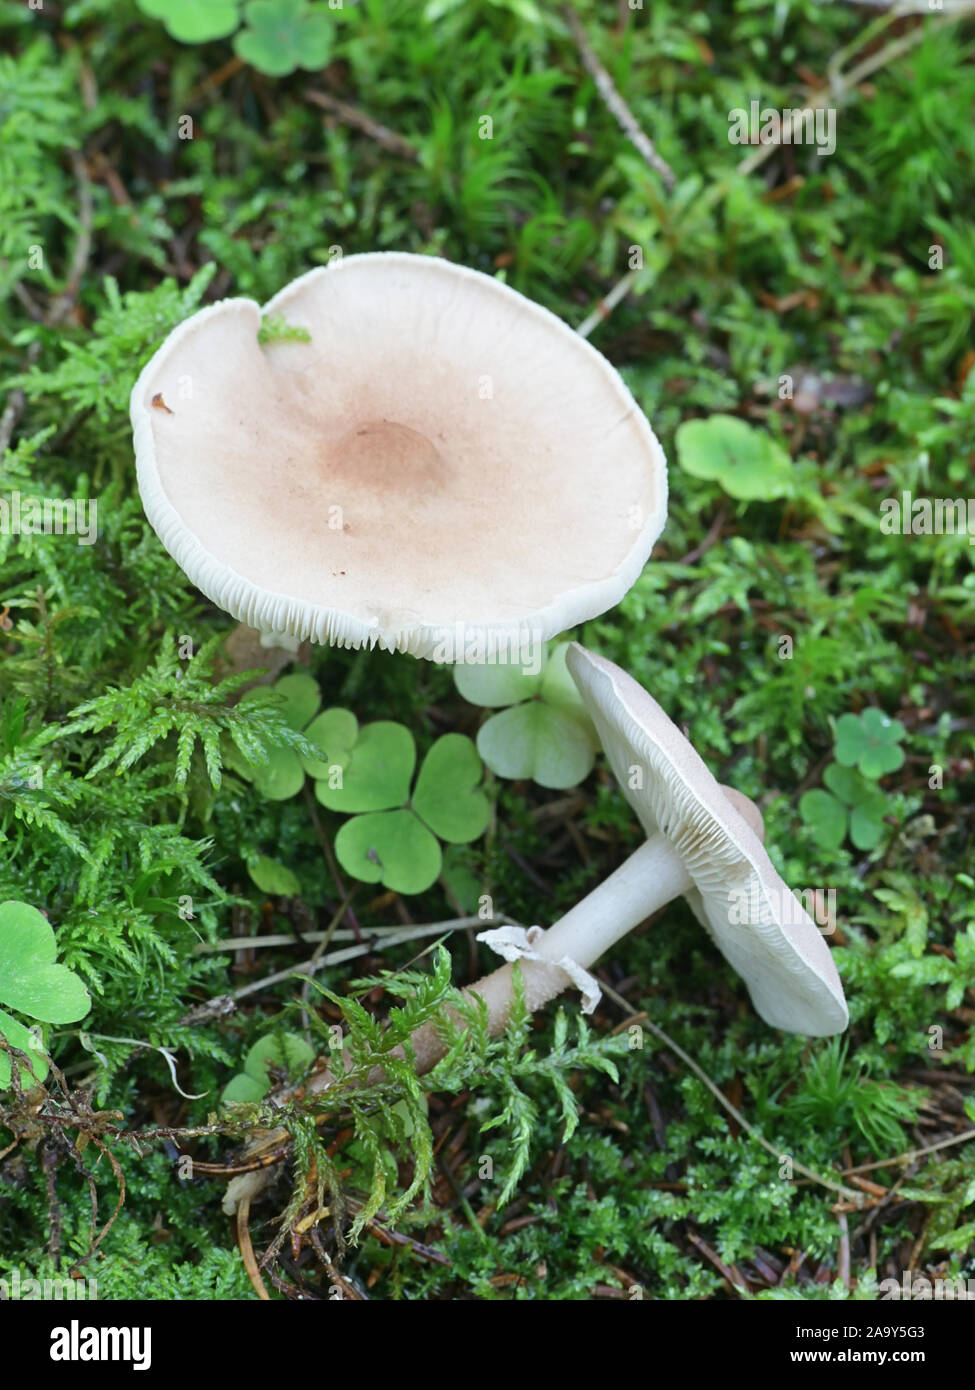 Cystoderma carcharias, bekannt als die Perligen Powdercap, Pilze aus Finnland Stockfoto